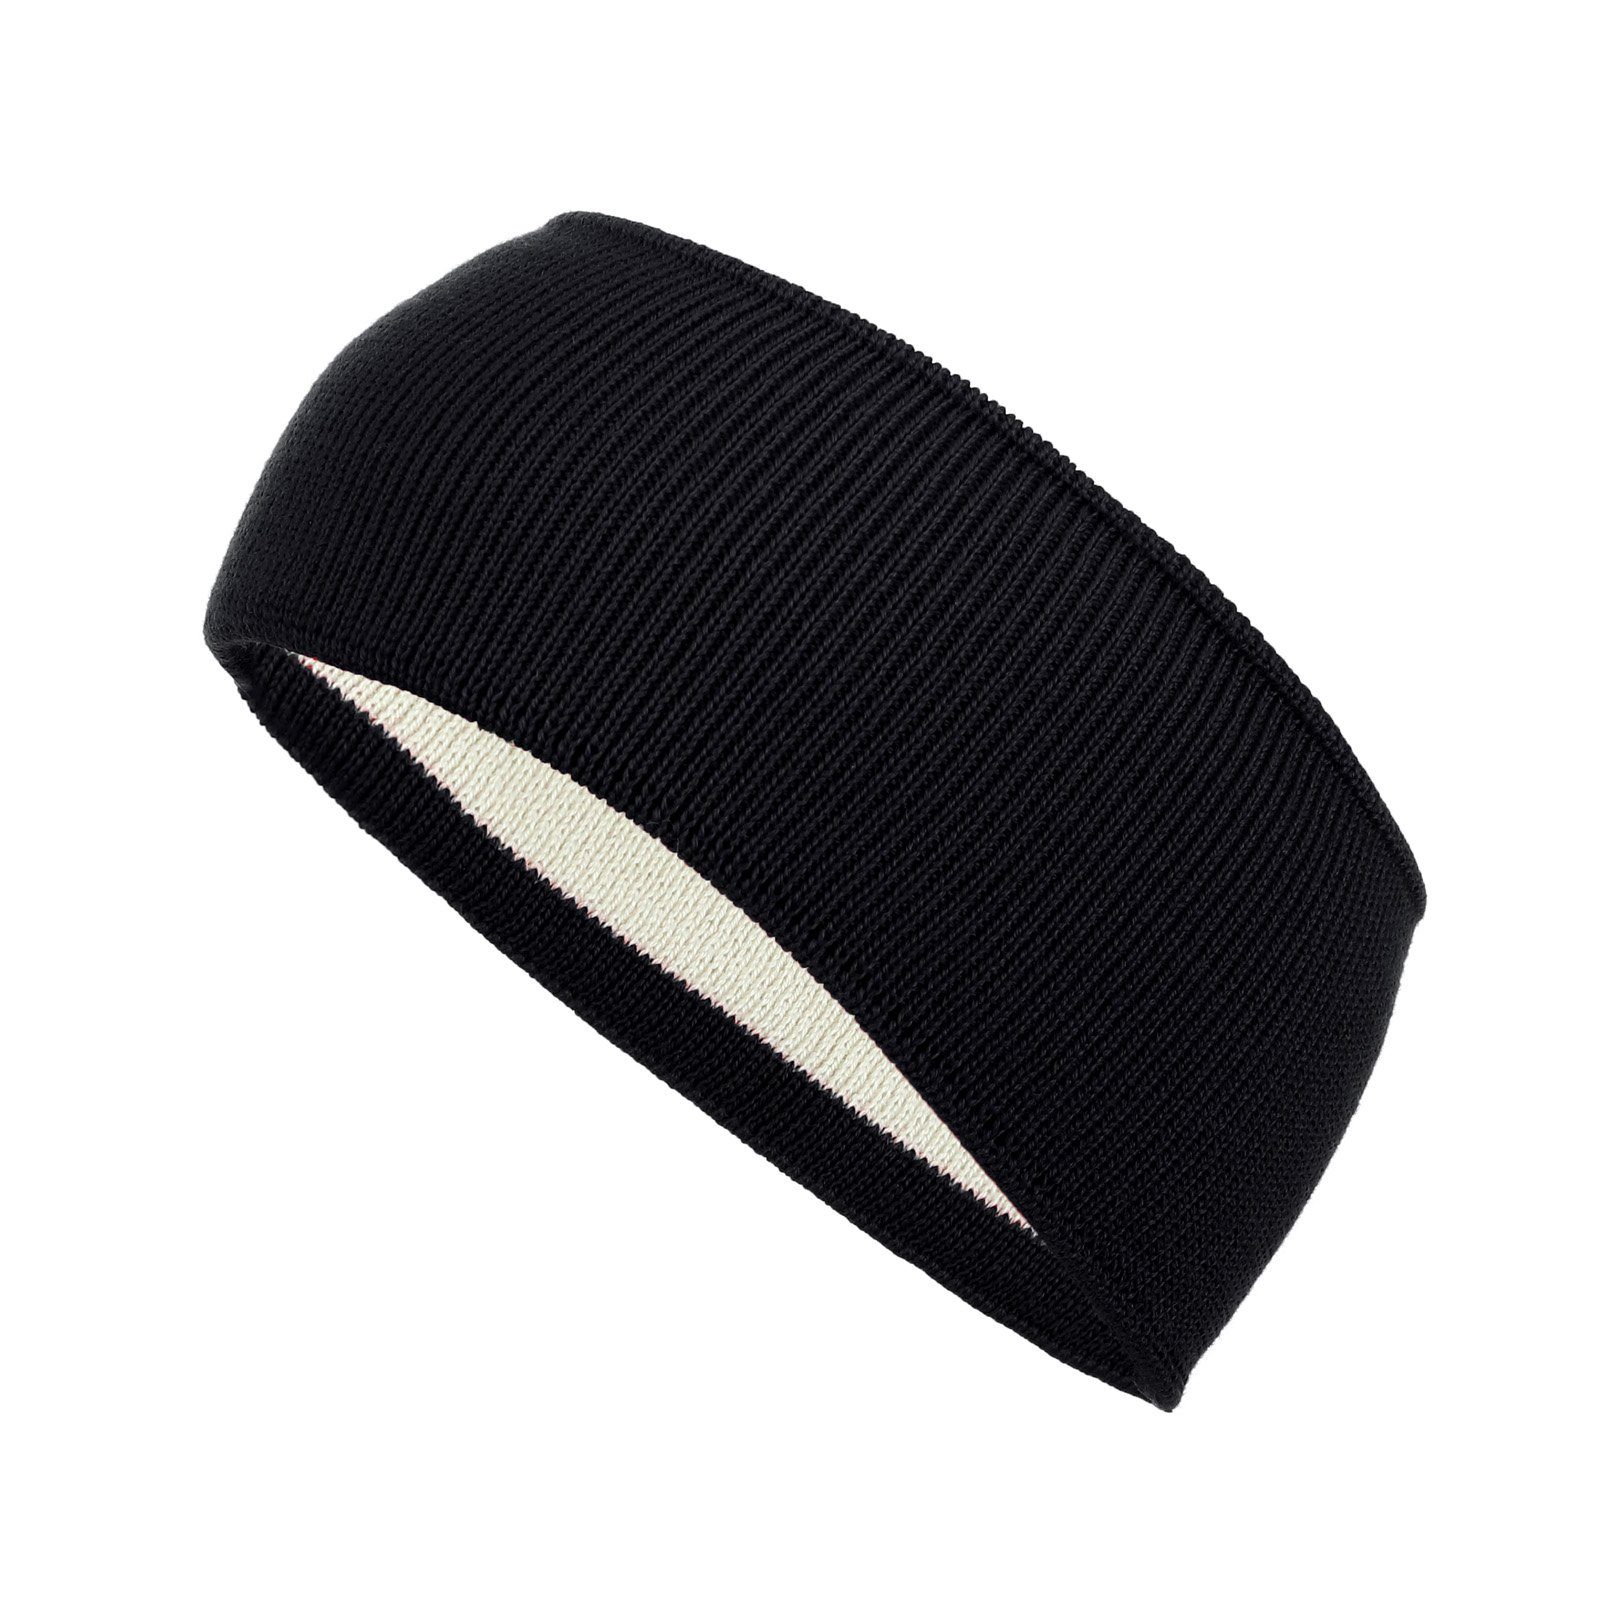 modAS Stirnband Unisex Winter Headband - Kopfband Ohrenwärmer aus Wolle (90) schwarz